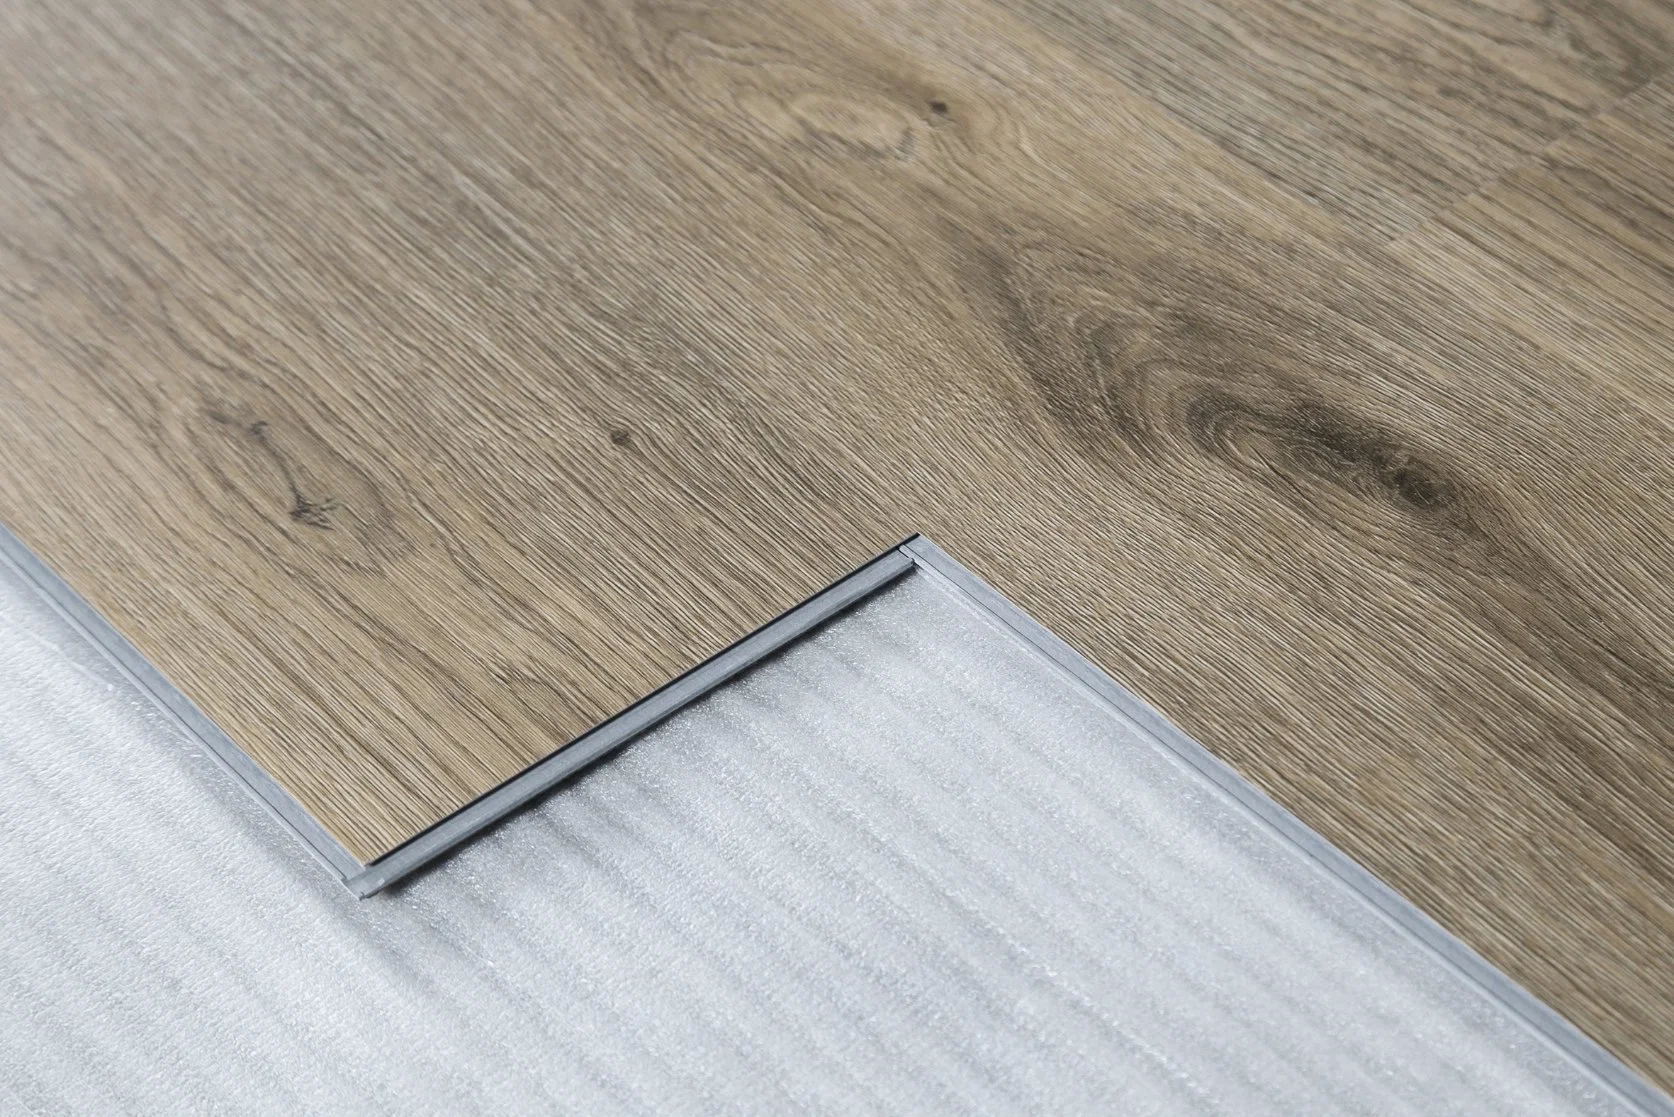 Compuesto de plástico de piedra de tablones de madera de vinilo autoadhesivo PVC plástico estilo piso pisos con precios competitivos calidad